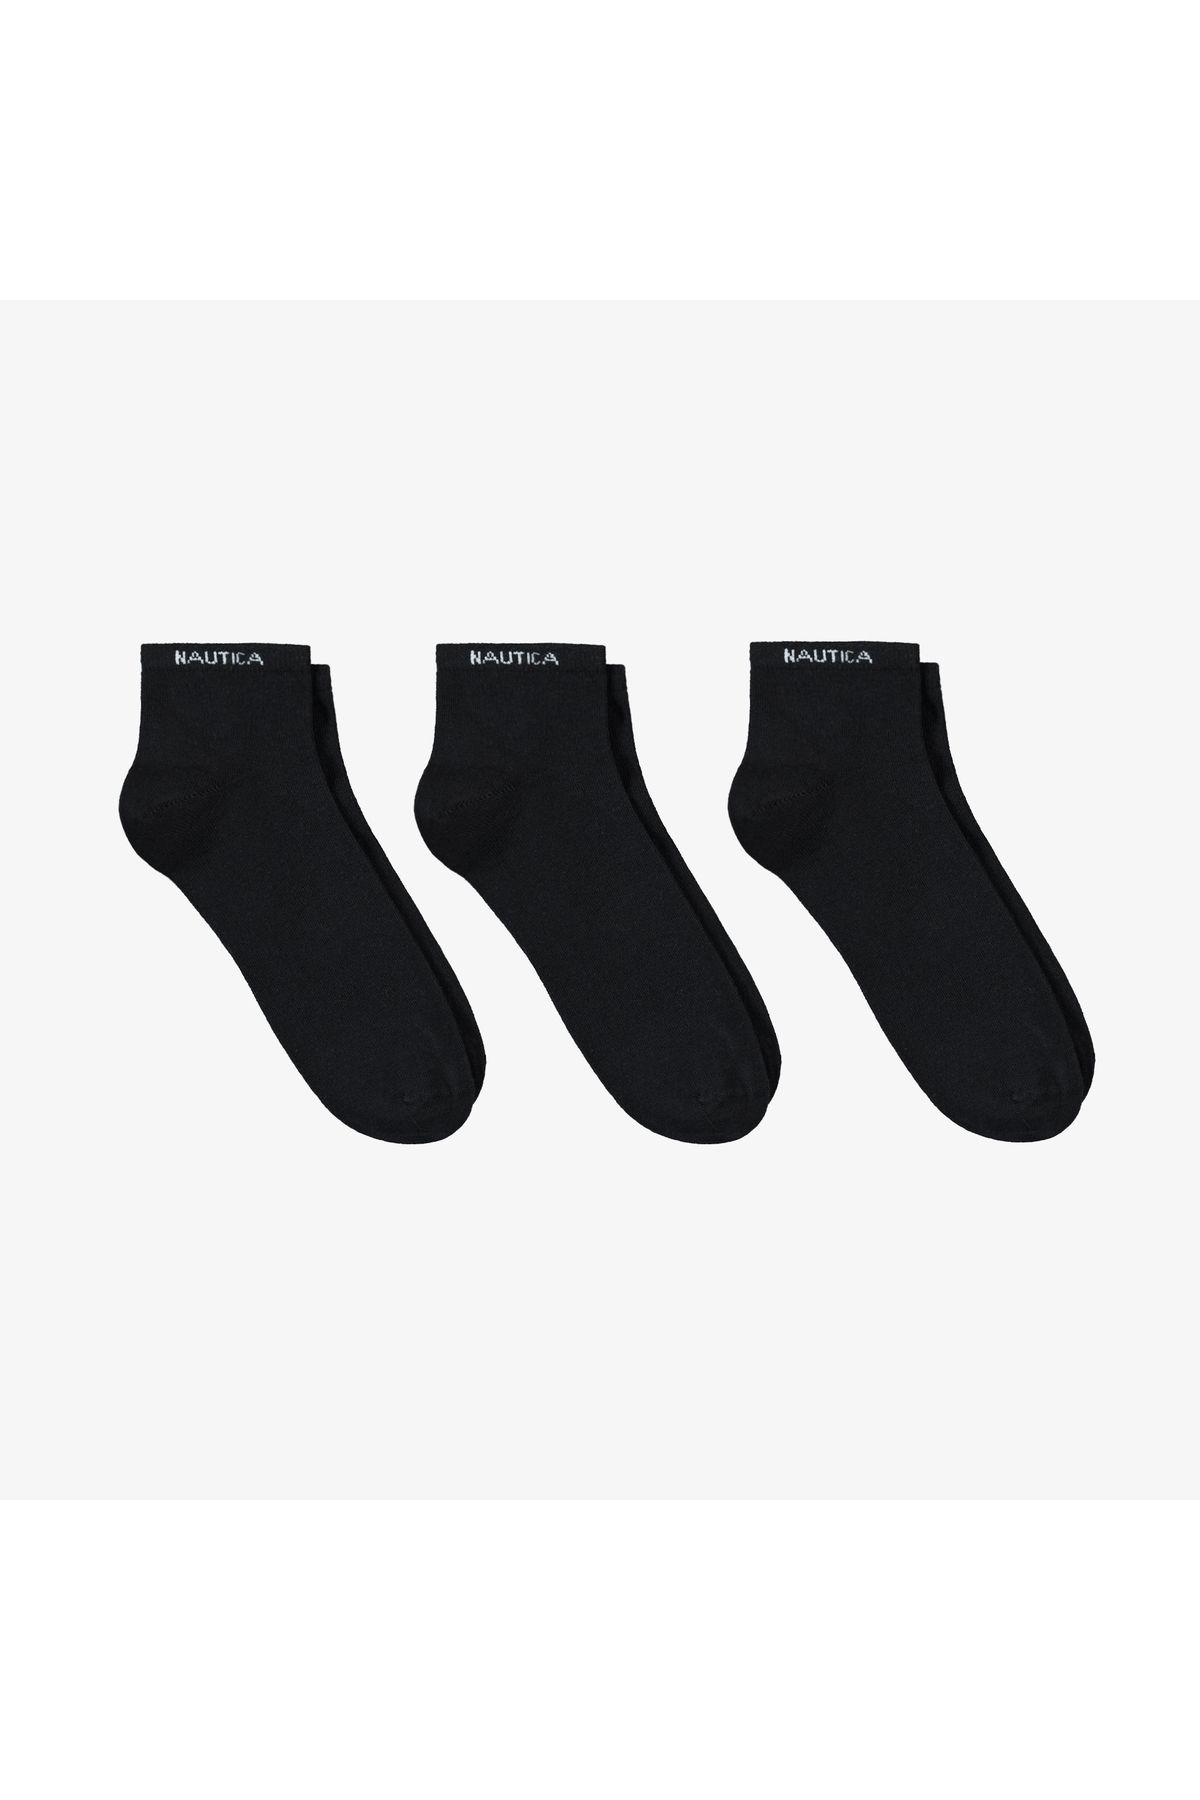 Nautica Erkek Siyah 3'lü Çorap